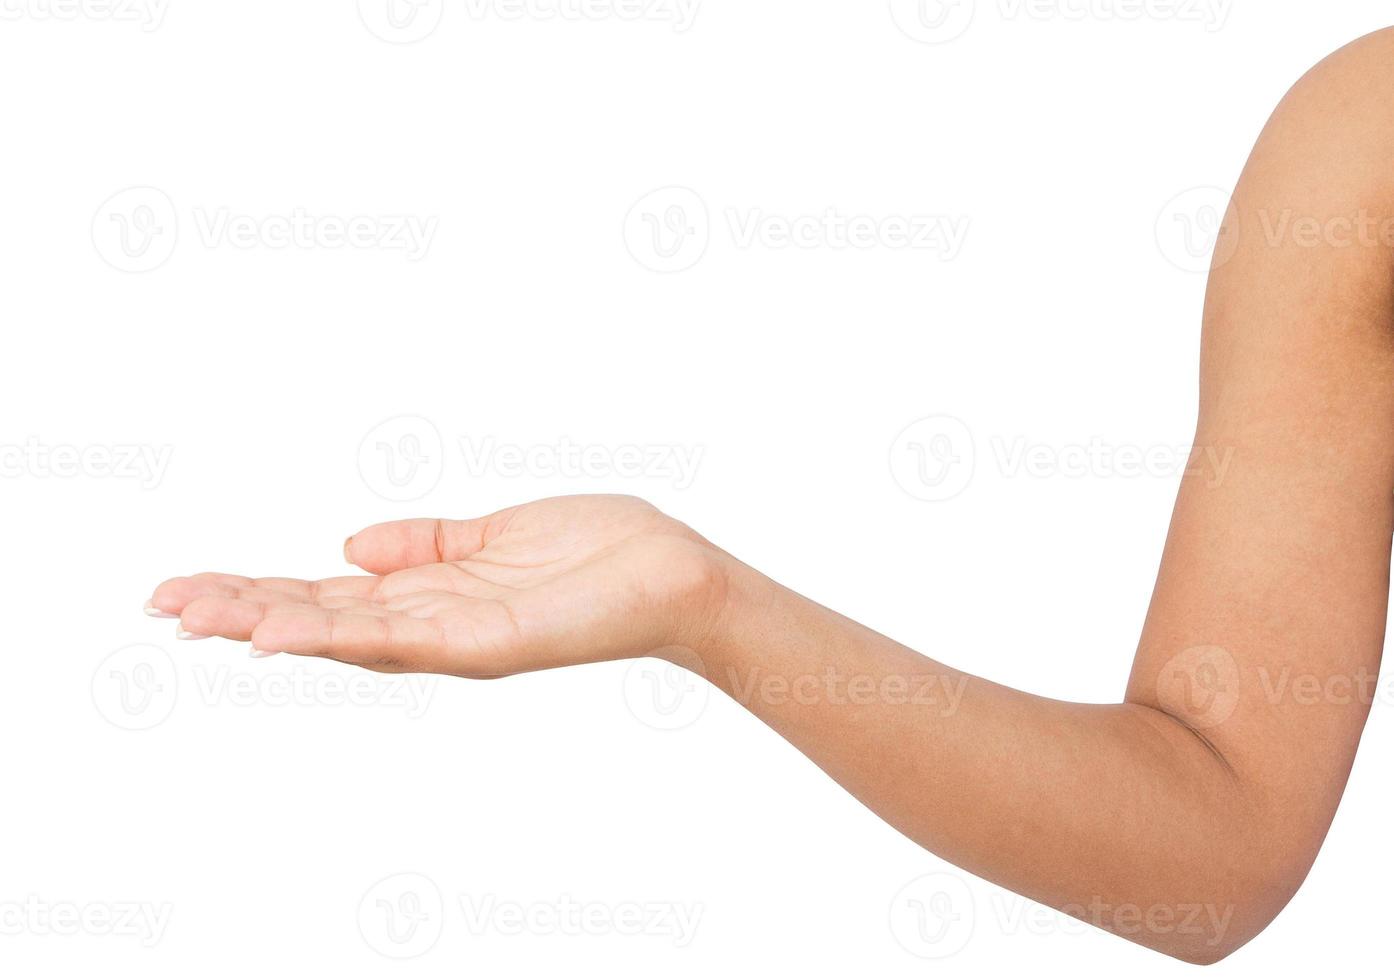 open de hand van de afro-amerikaanse vrouw, palm omhoog geïsoleerd op een witte achtergrond foto